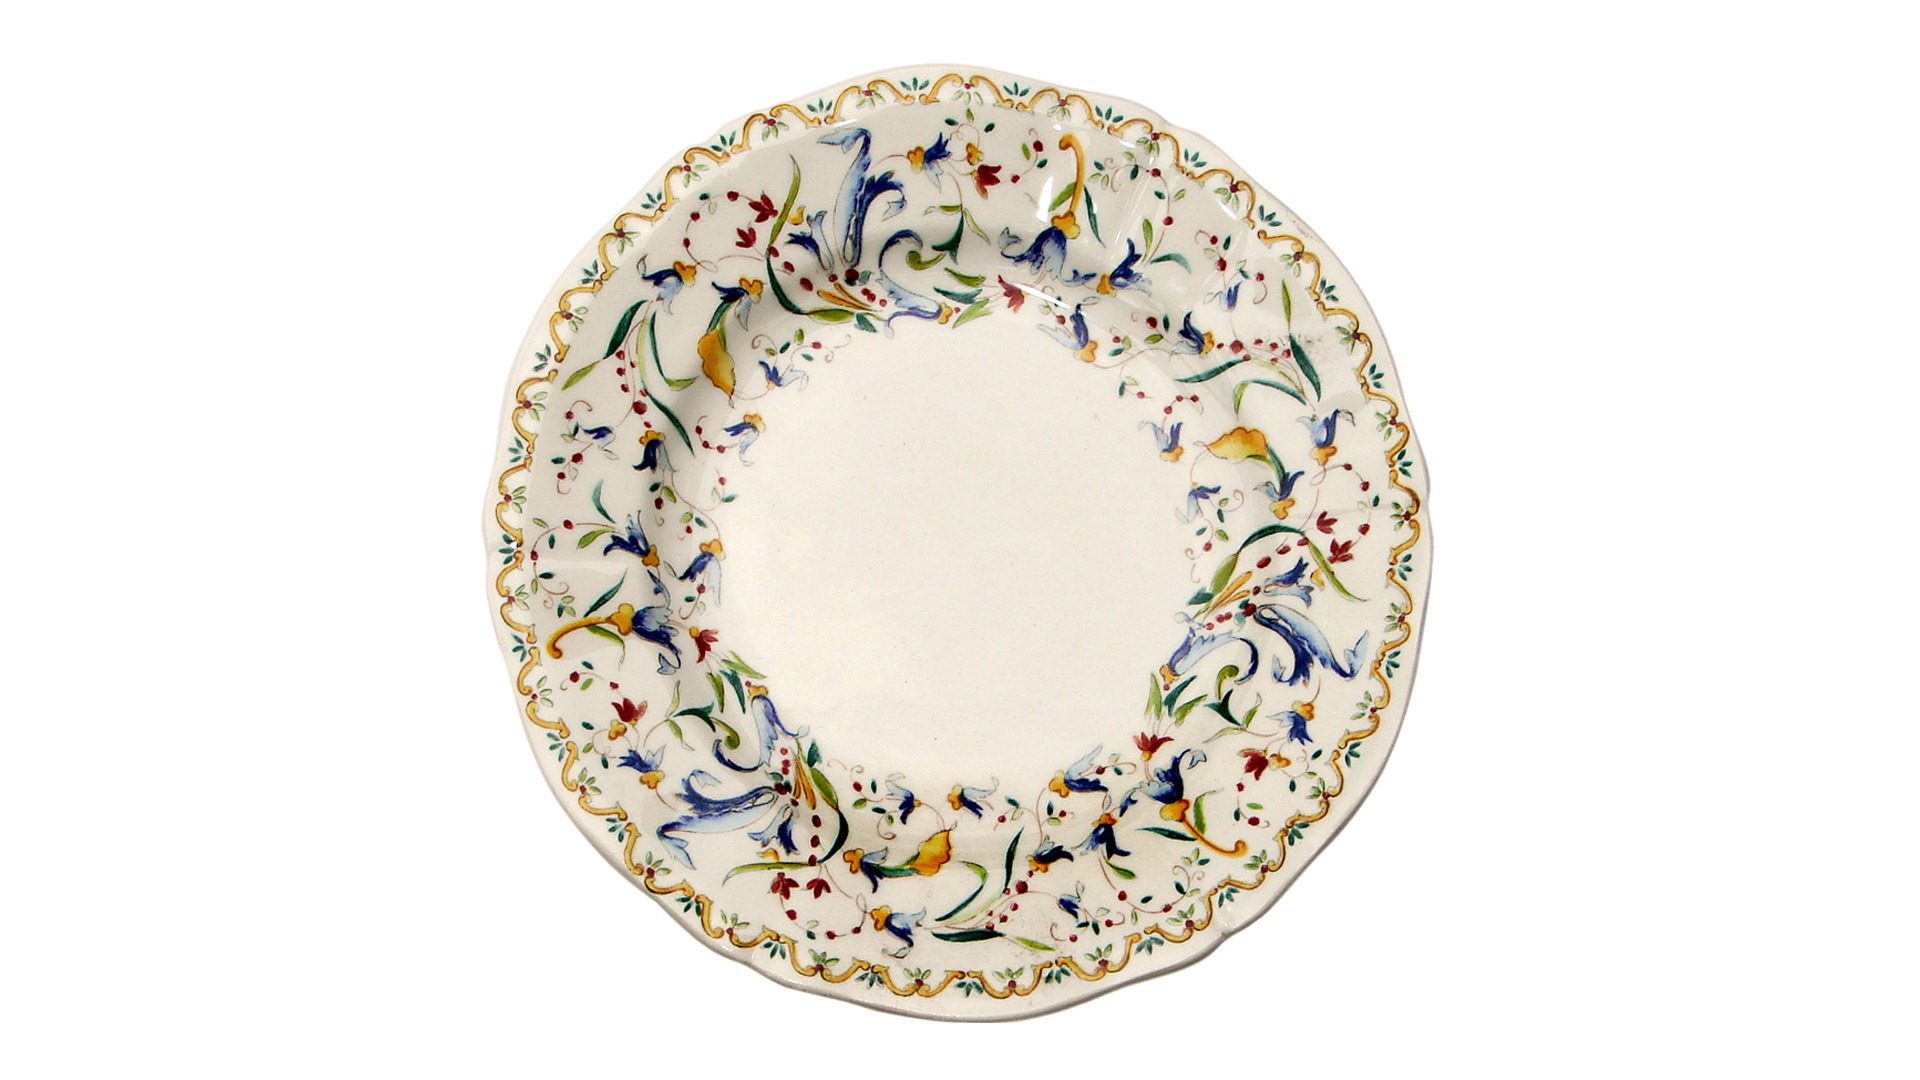 Набор тарелок пирожковых Gien Тоскана 16 см, фаянс, 4 шт